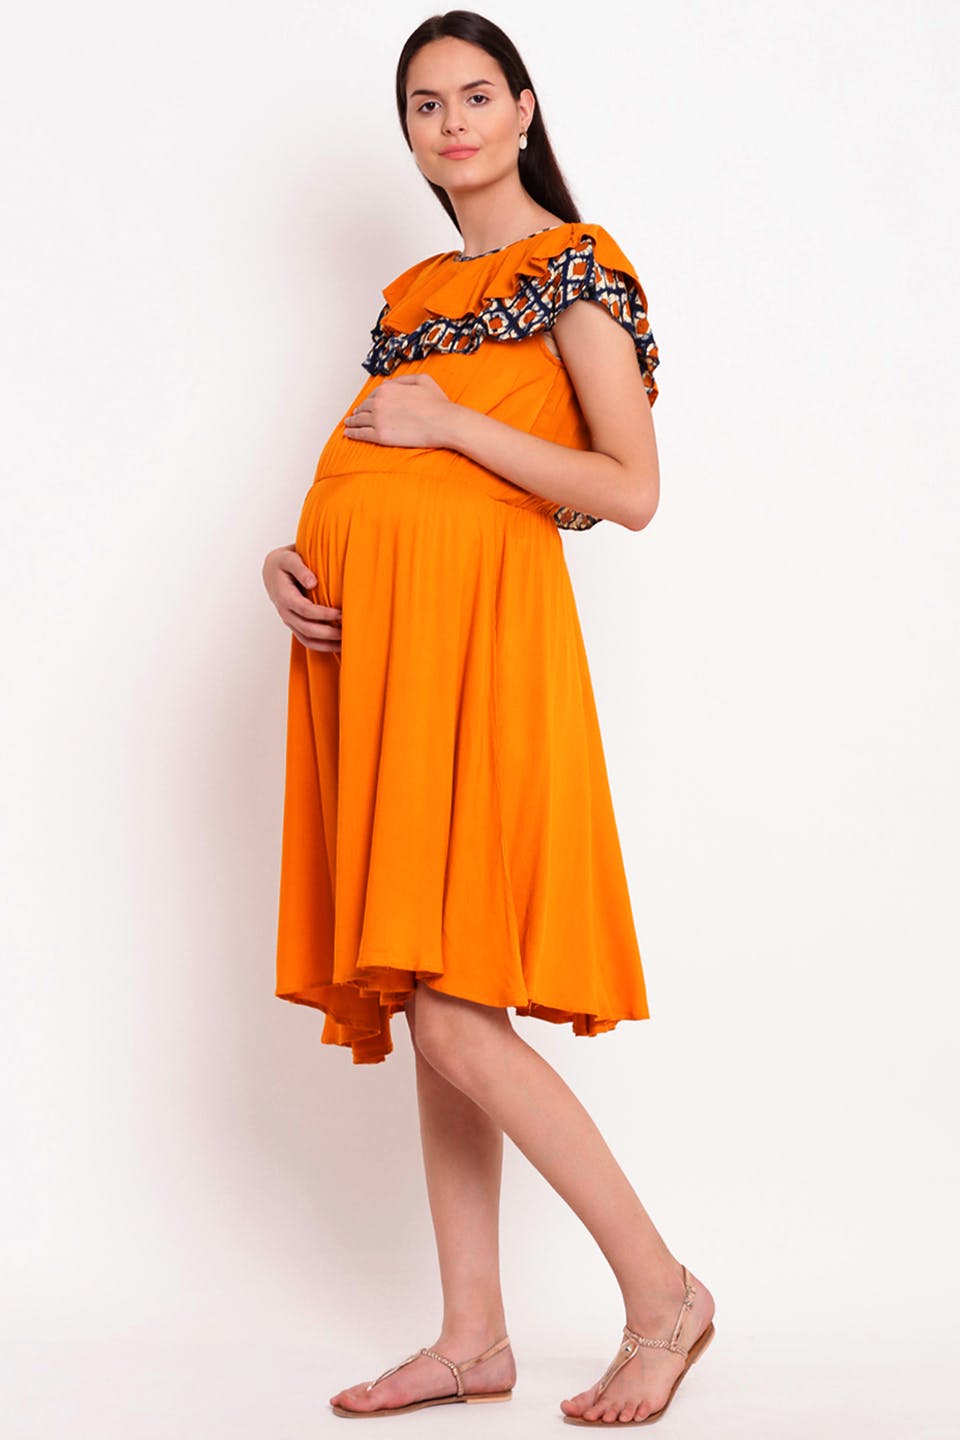 Maternity Wear & Dresses Online | LBB, Delhi